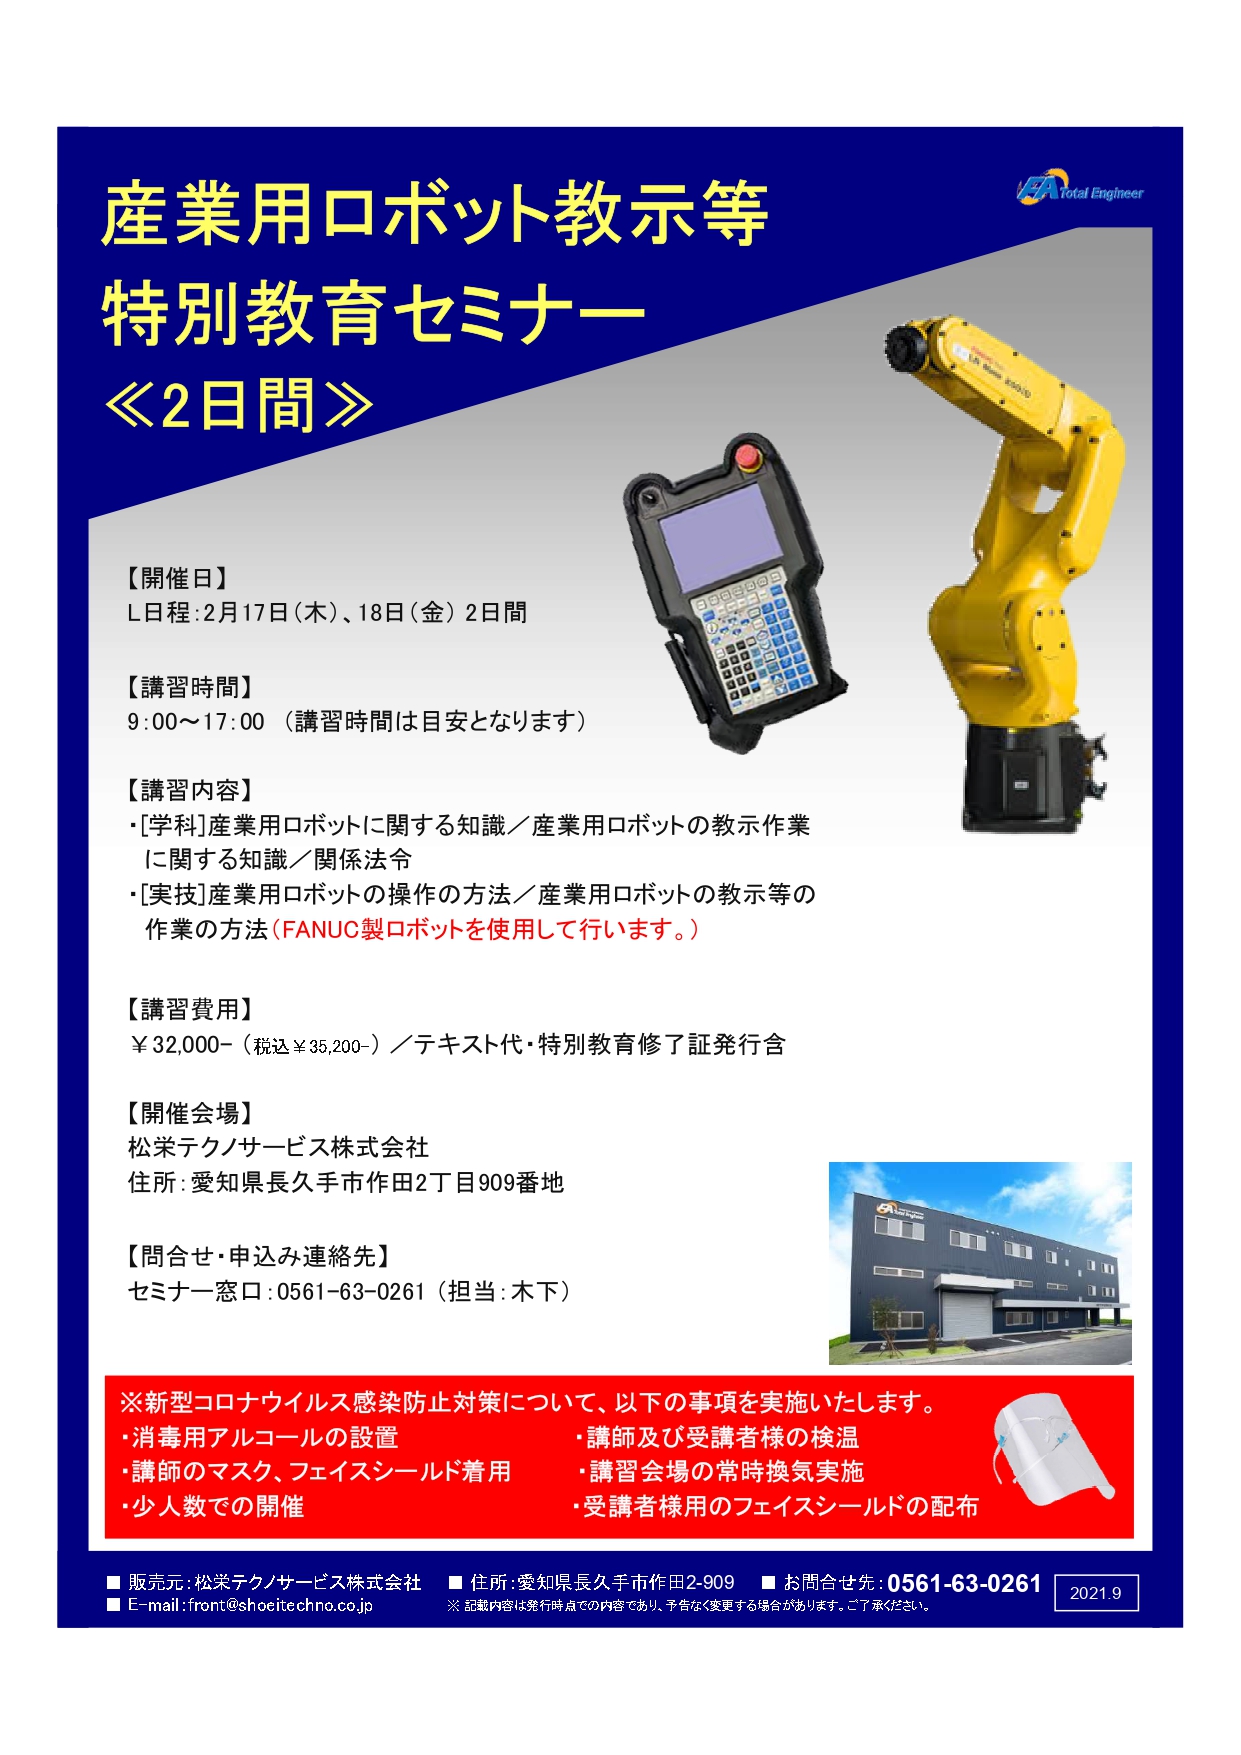 【終了しました】産業用ロボット特別教育（教示等）愛知会場開催のお知らせ【2022年2月】